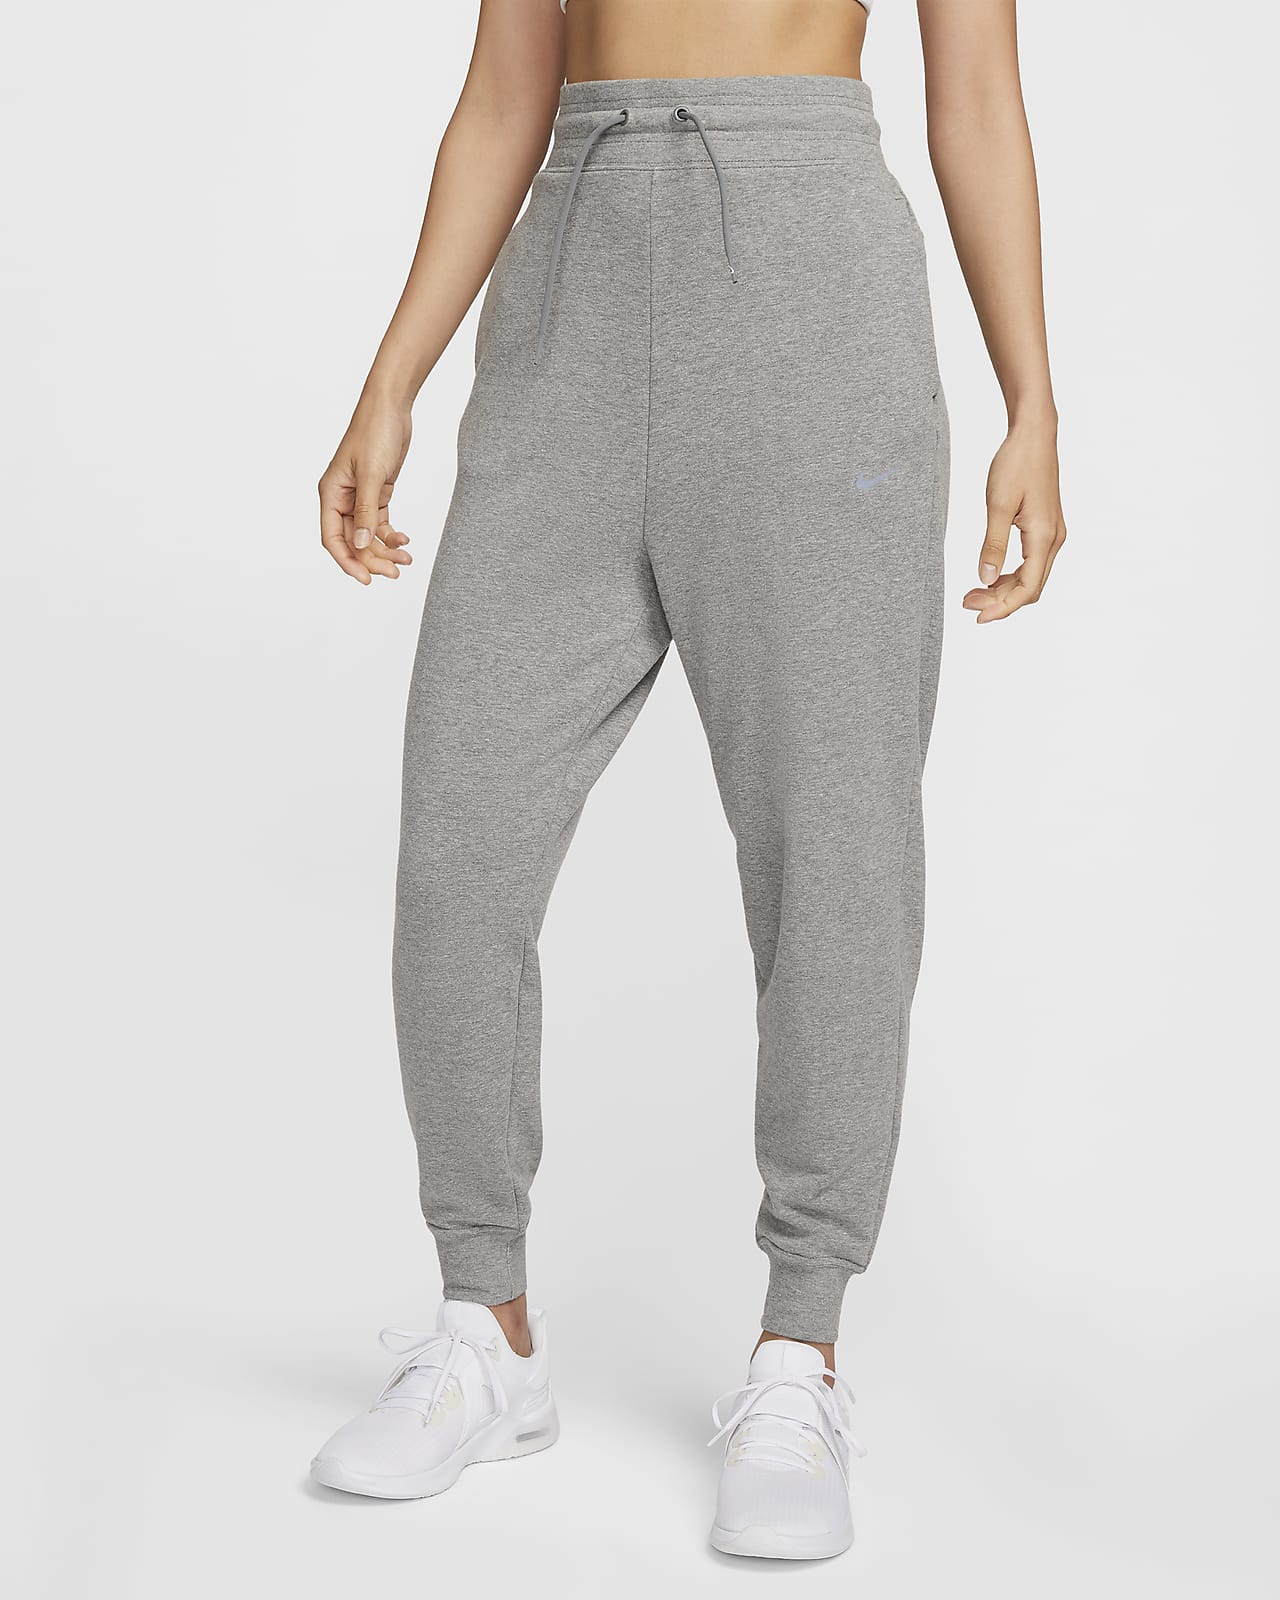 กางเกงซ้อมกีฬาผ้าเฟรนช์เทรีเอวสูงผู้หญิง 7/8 ส่วน 
Nike Dri-FIT One